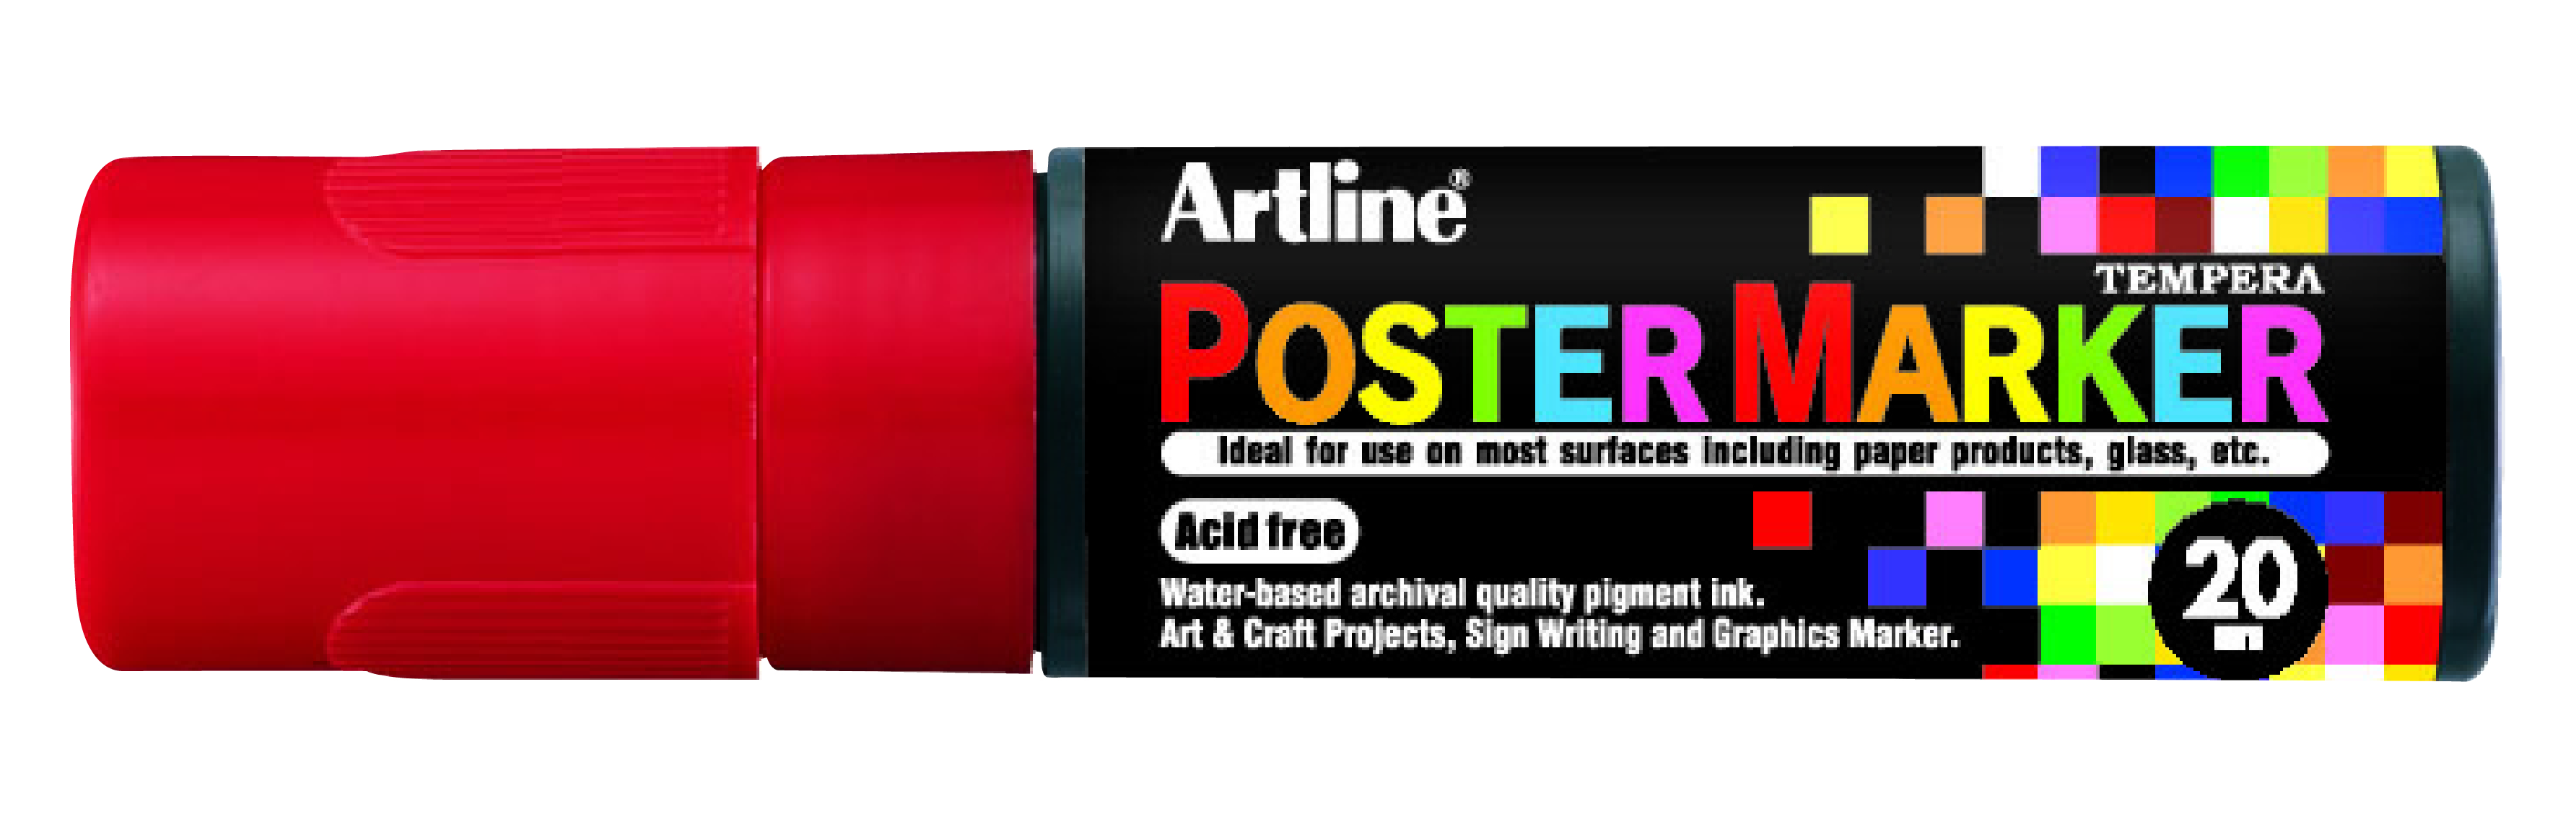 Artline EPP-20 PosterMarker 20mm merkepenn Rød